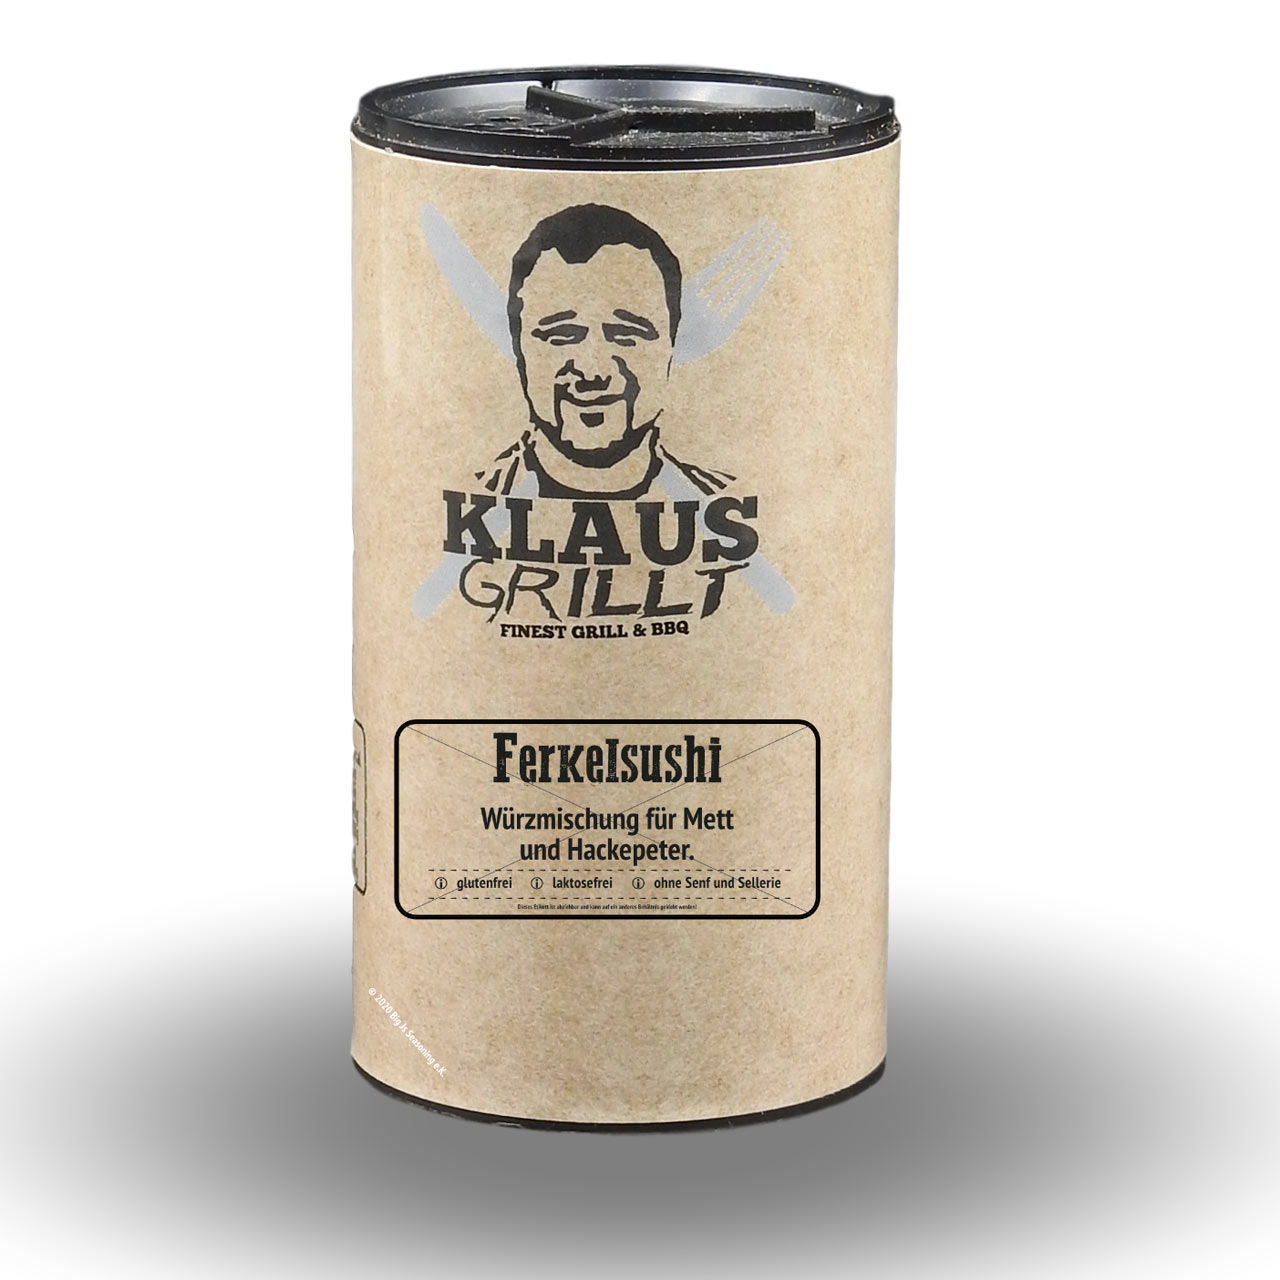 Klaus Grillt - Ferkelsushi 100 g Streuer